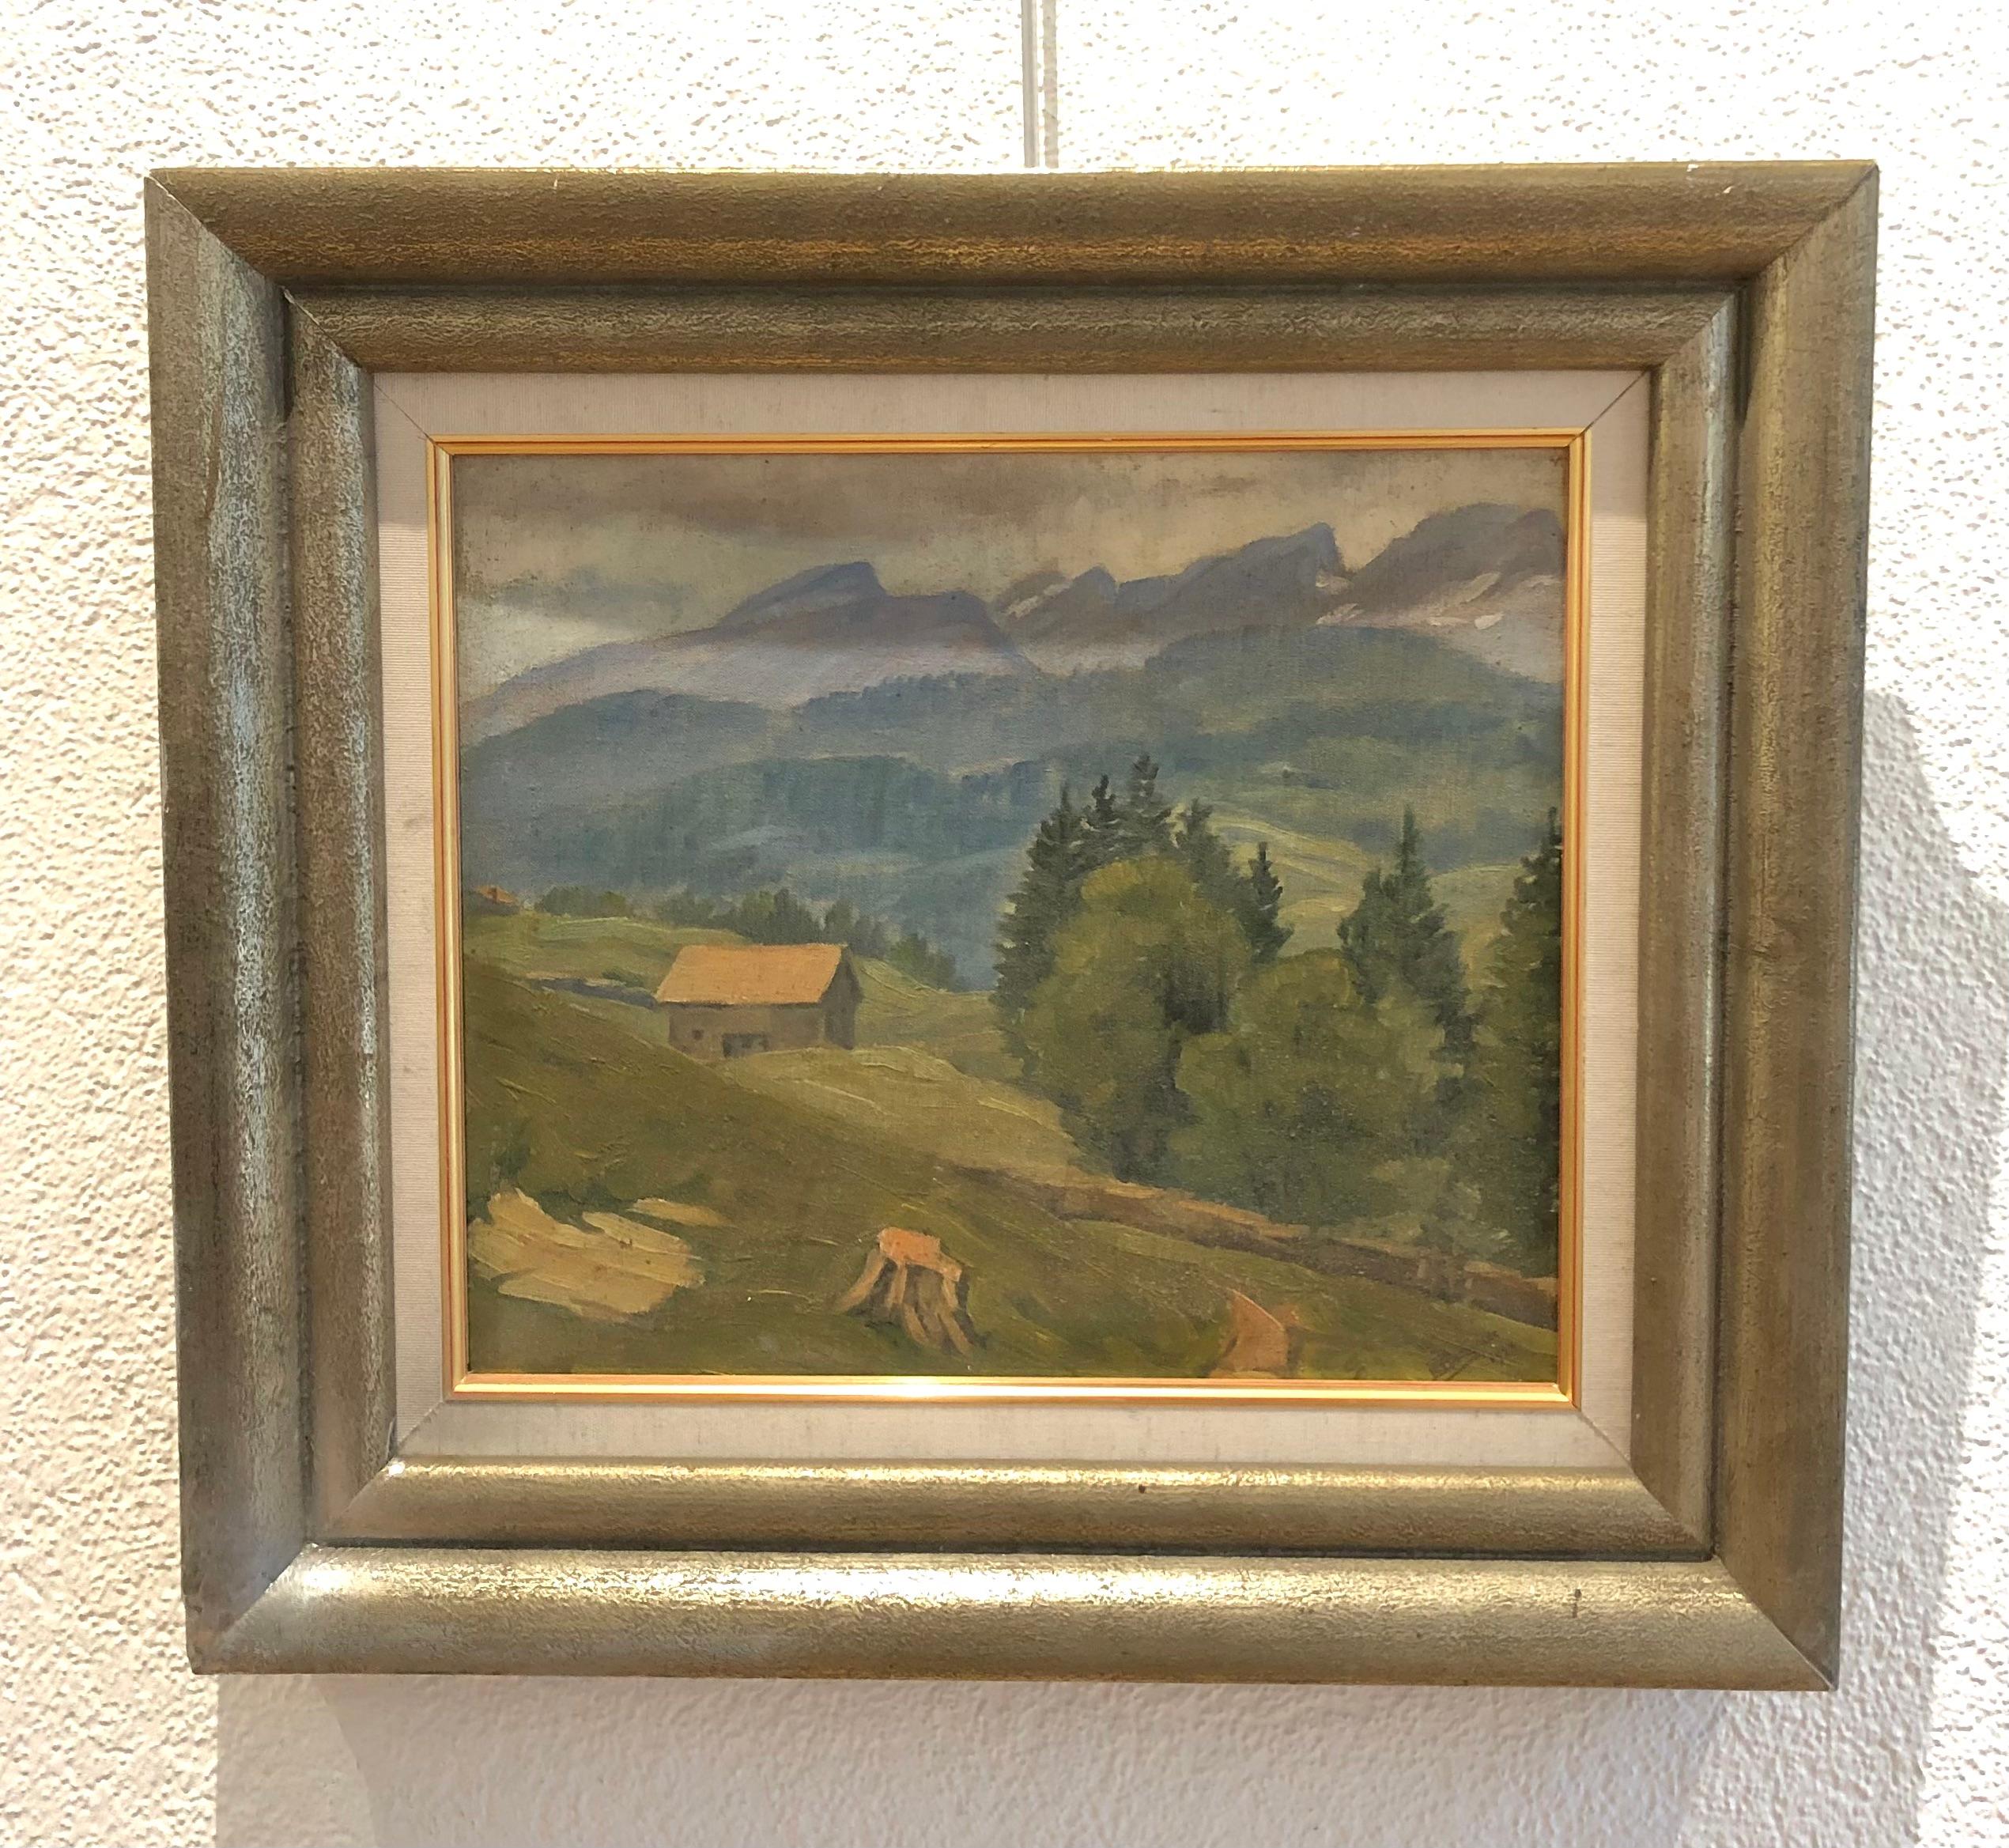 Landscape of the Swiss Alps - Painting by Edoardo De Grada